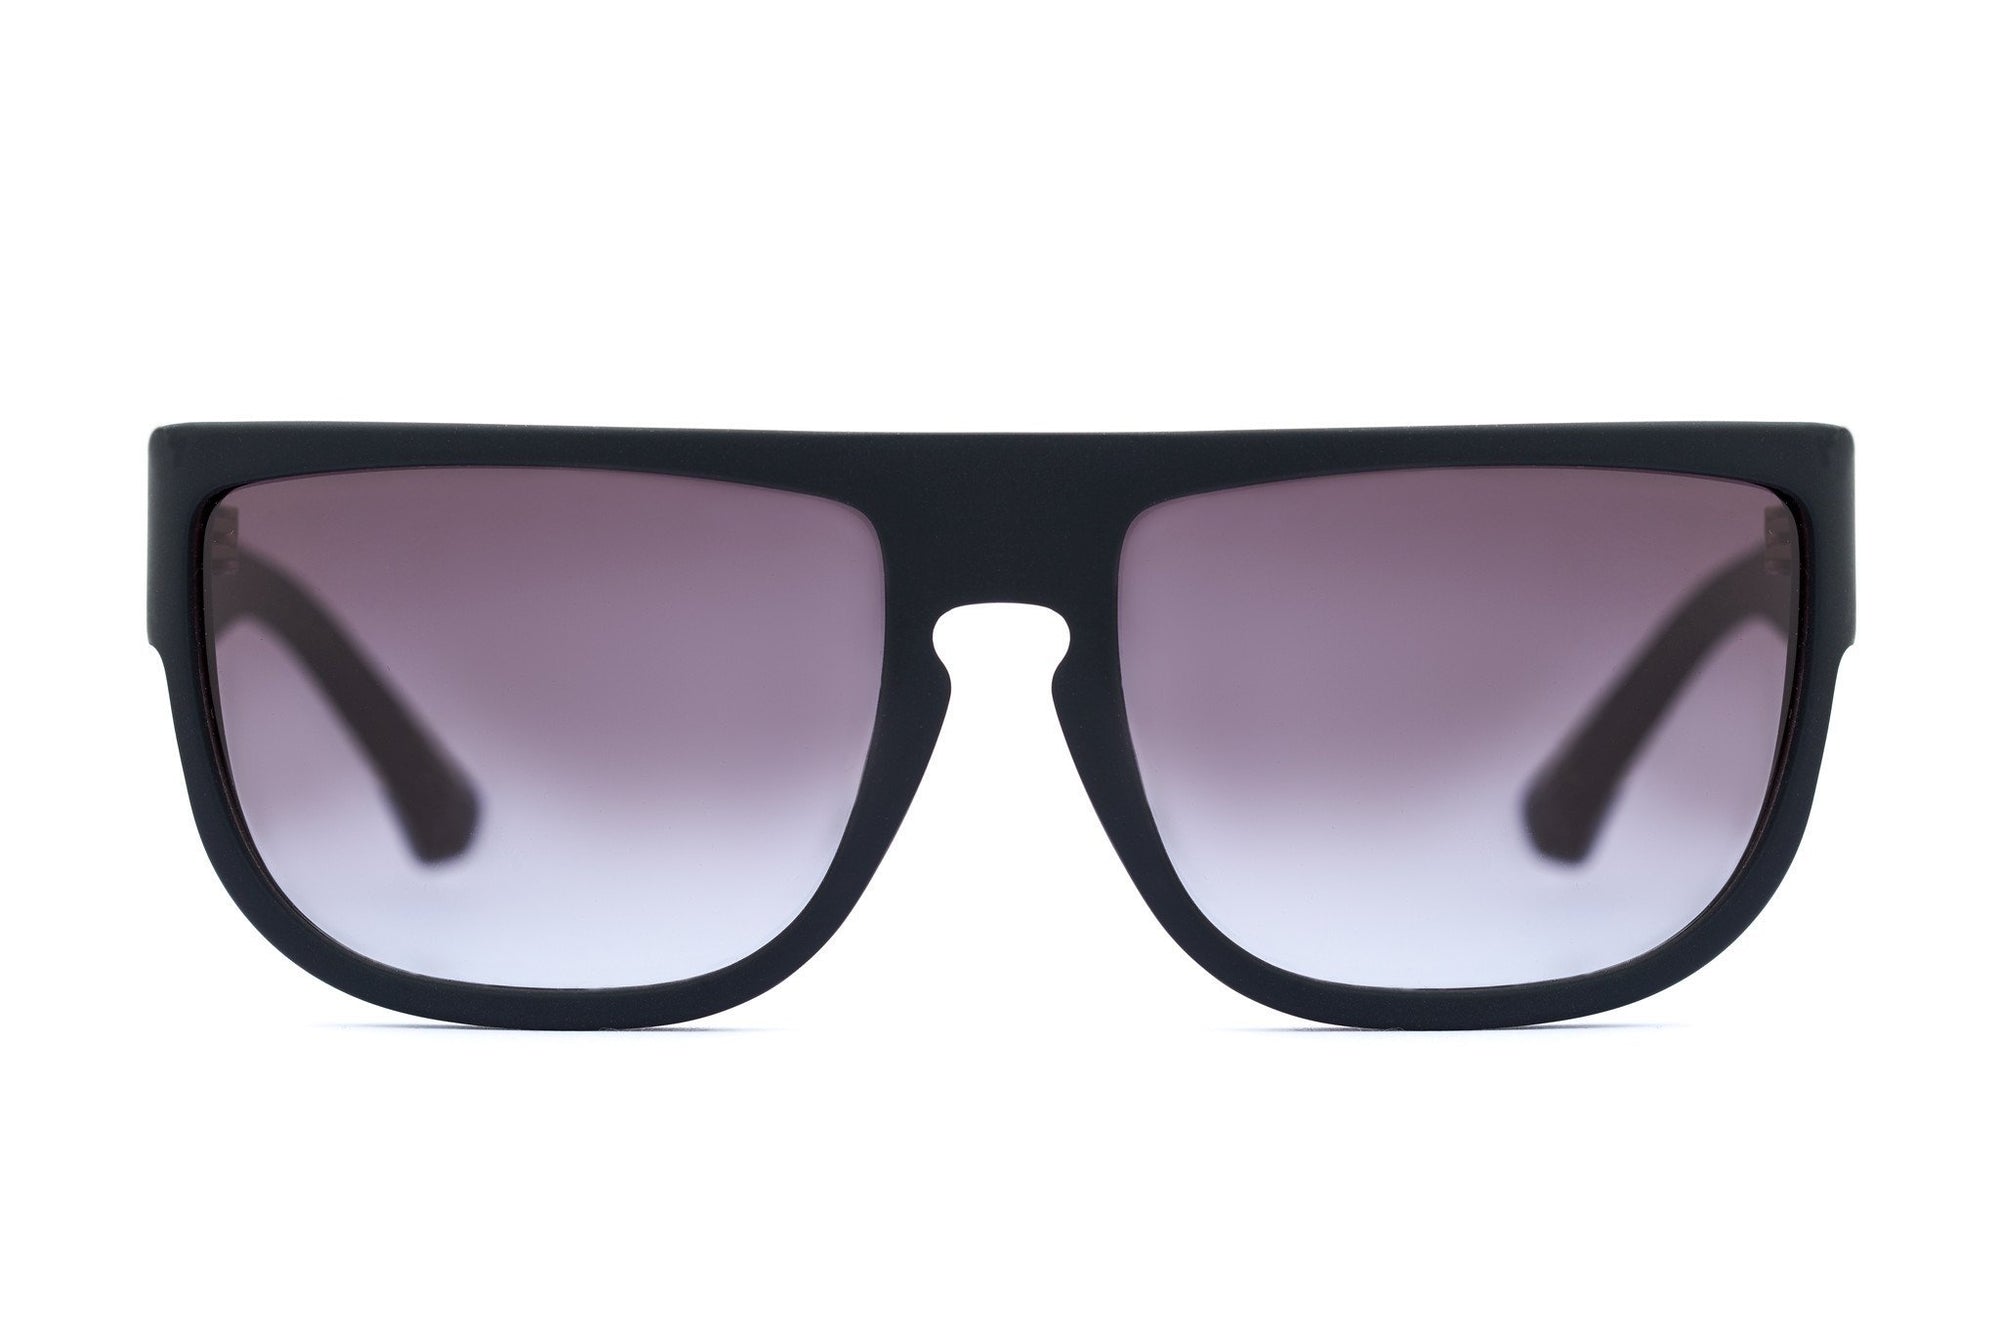 CLYDE-MATTE BLACK - Sunglasses For Men - EstablishedStore.com